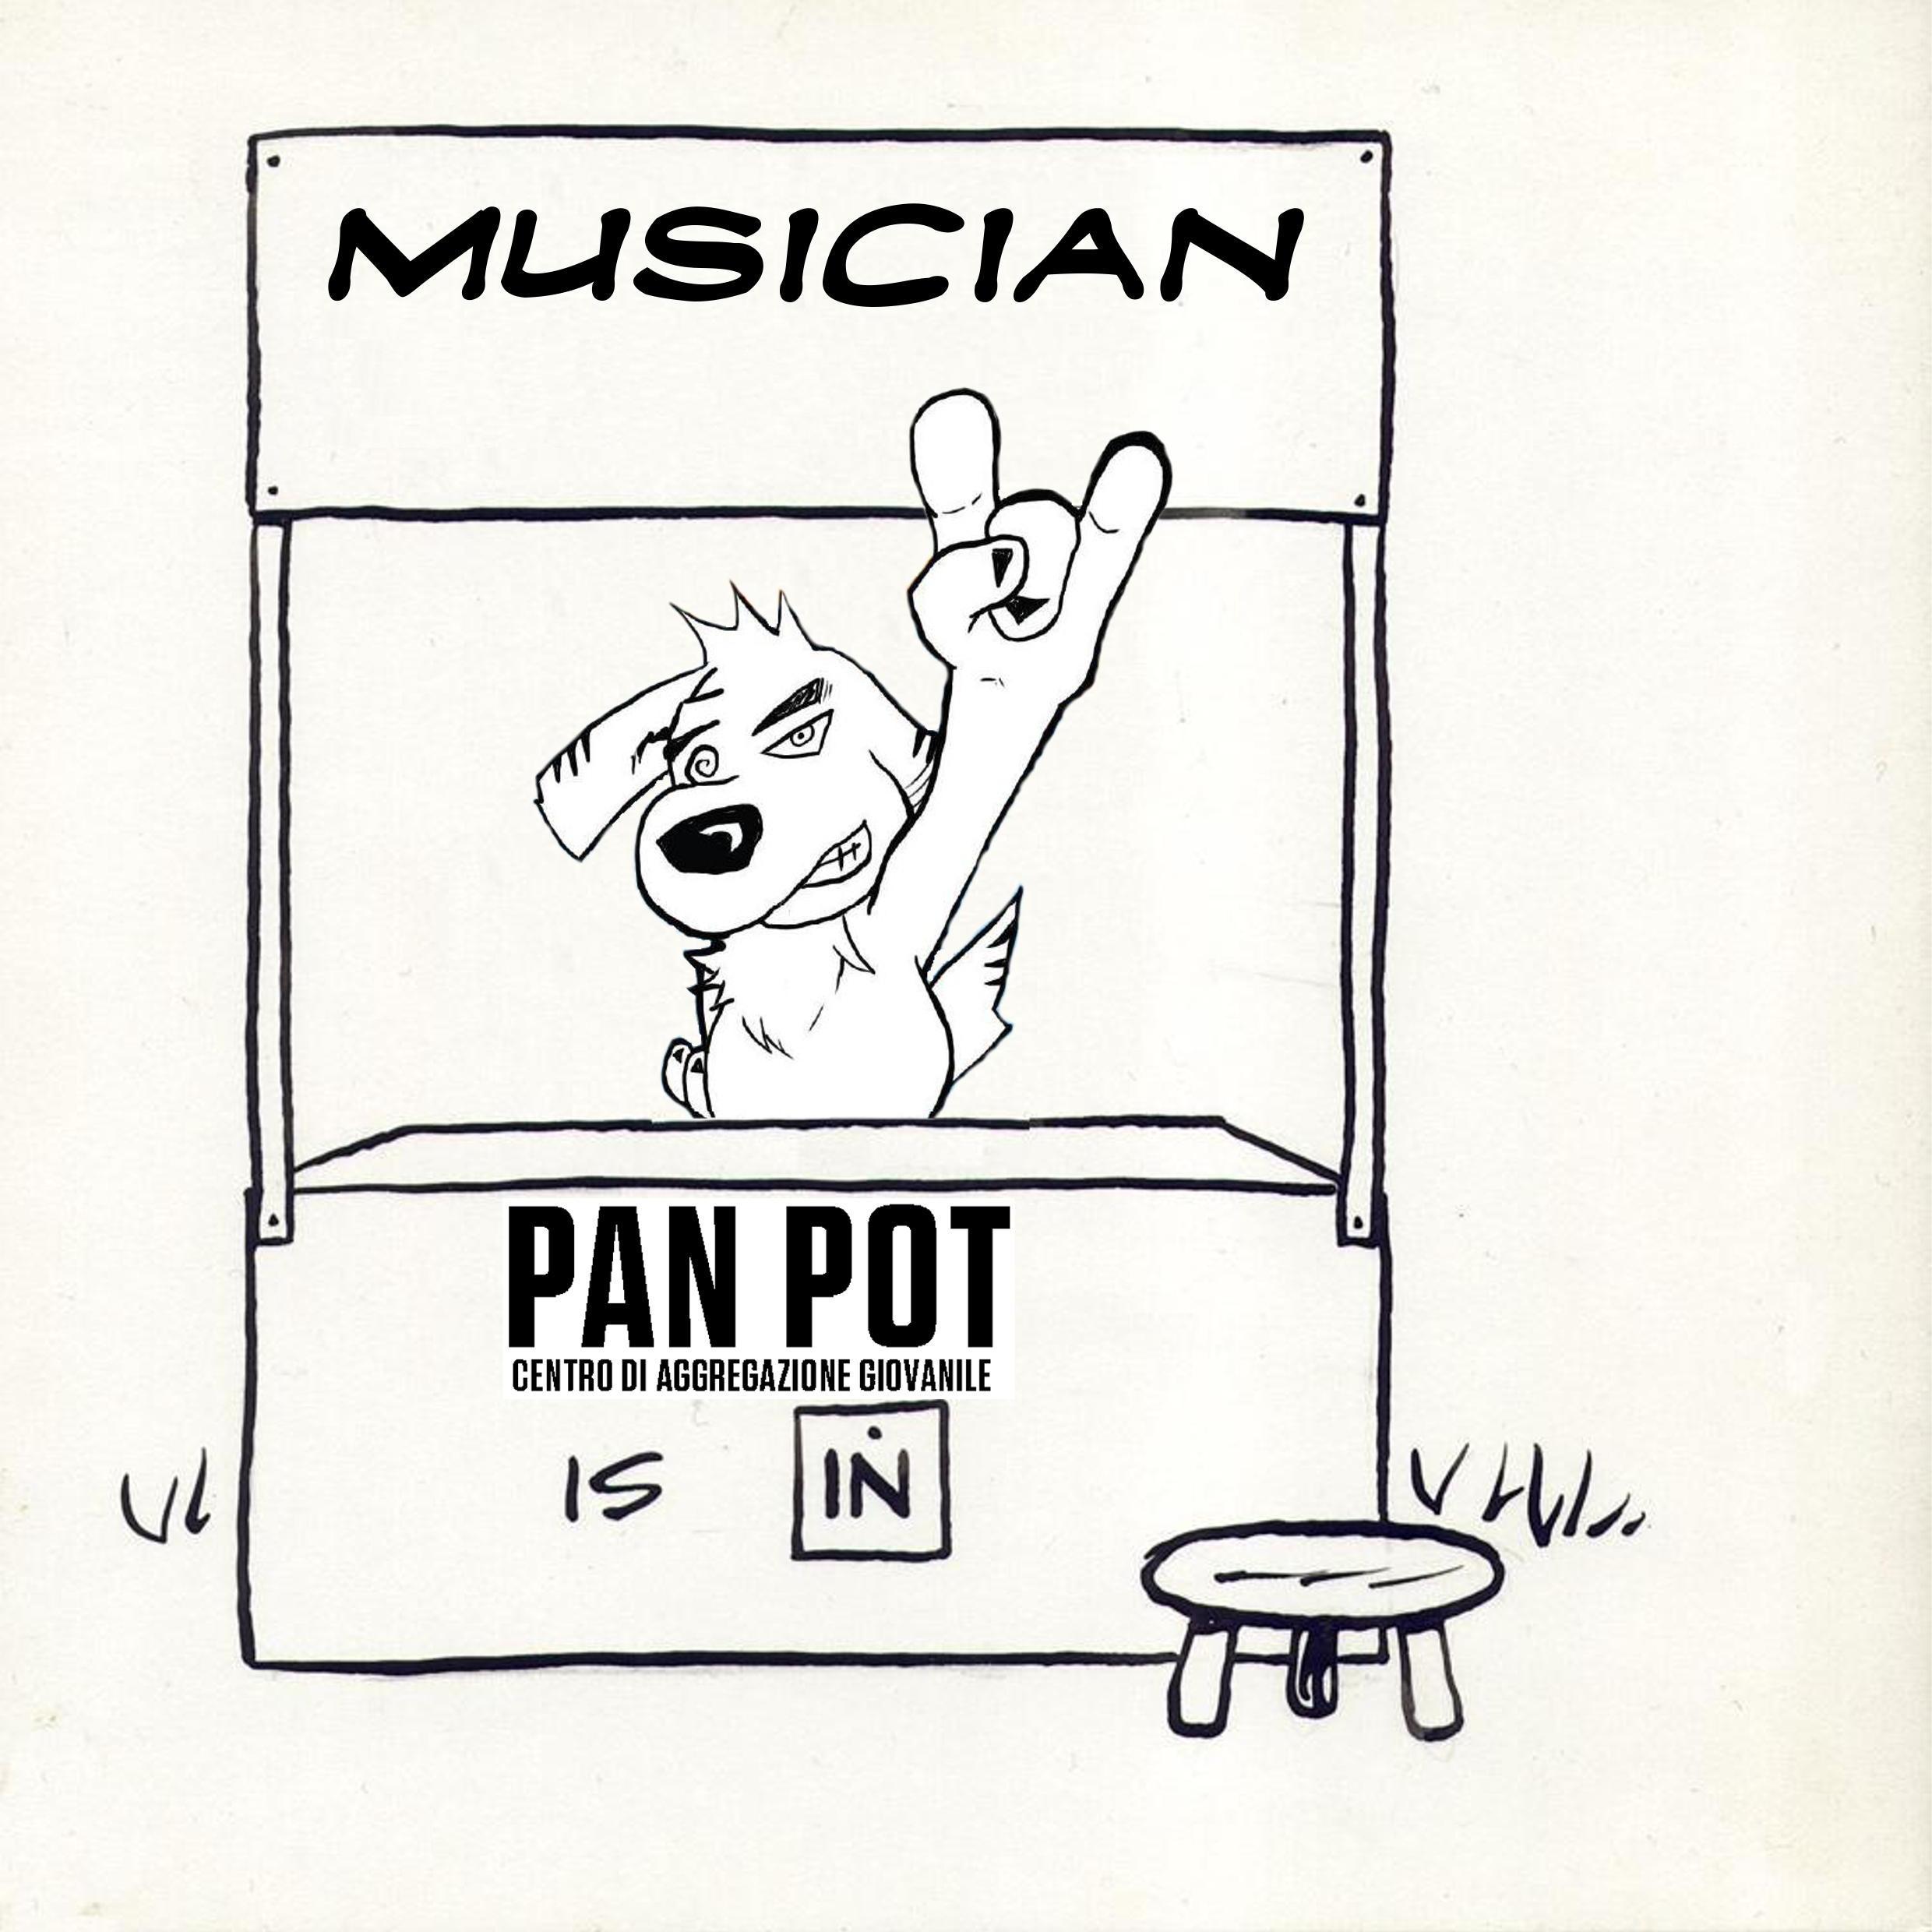 pan_pot_is_in